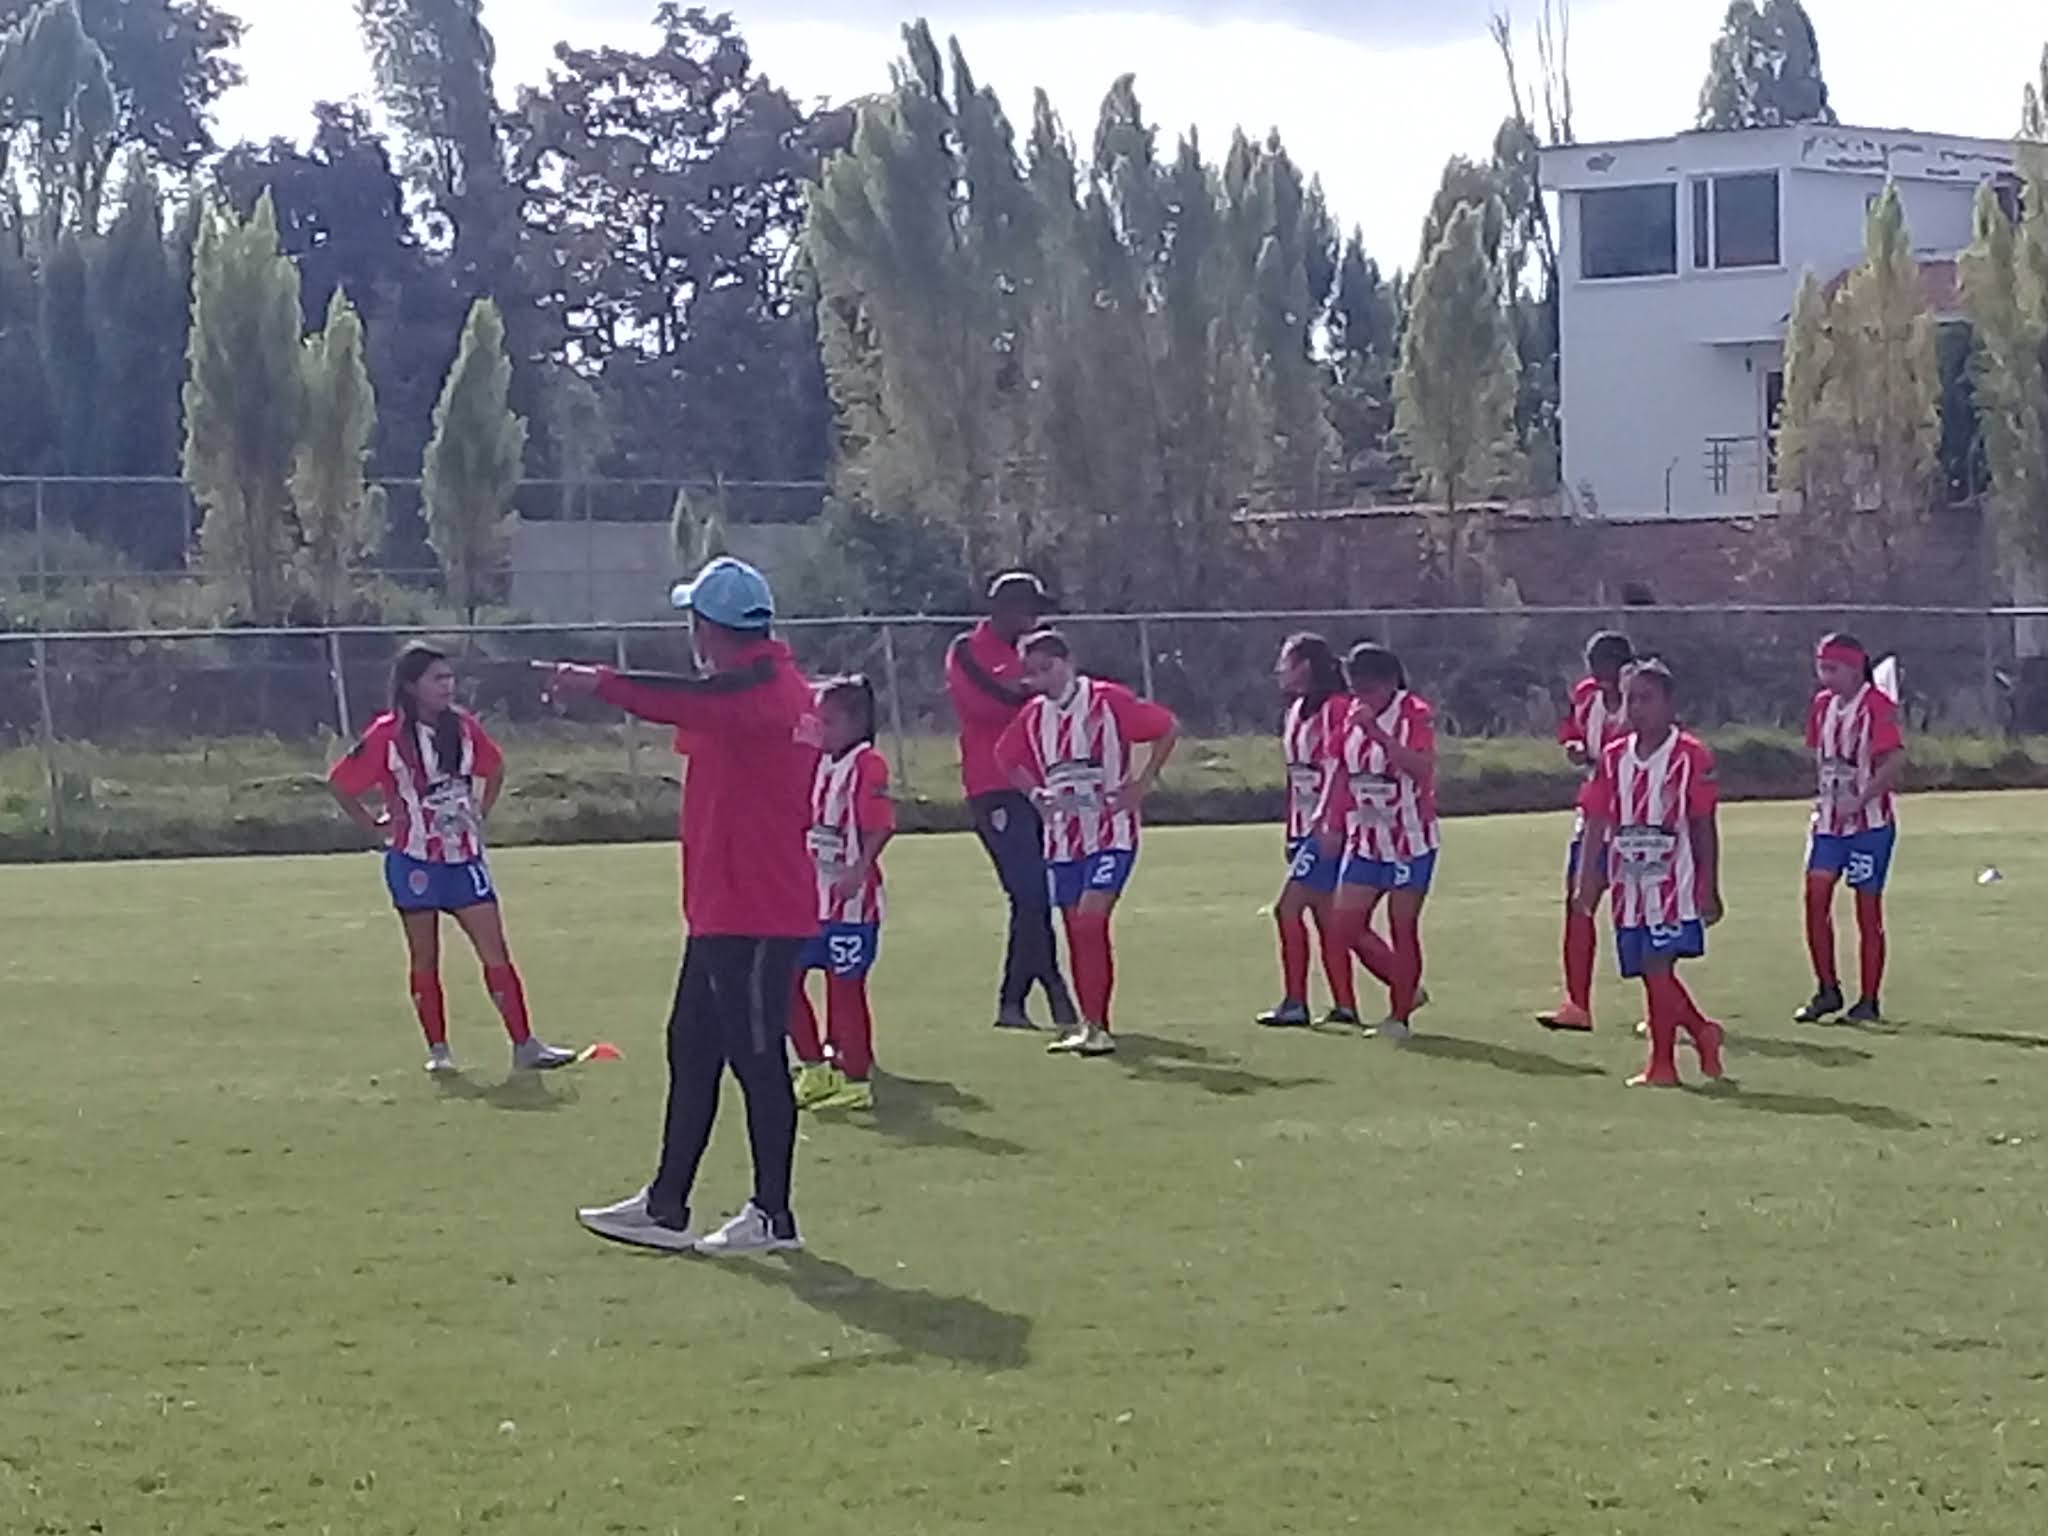 somosdelmismobarro: Atlético San Miguel